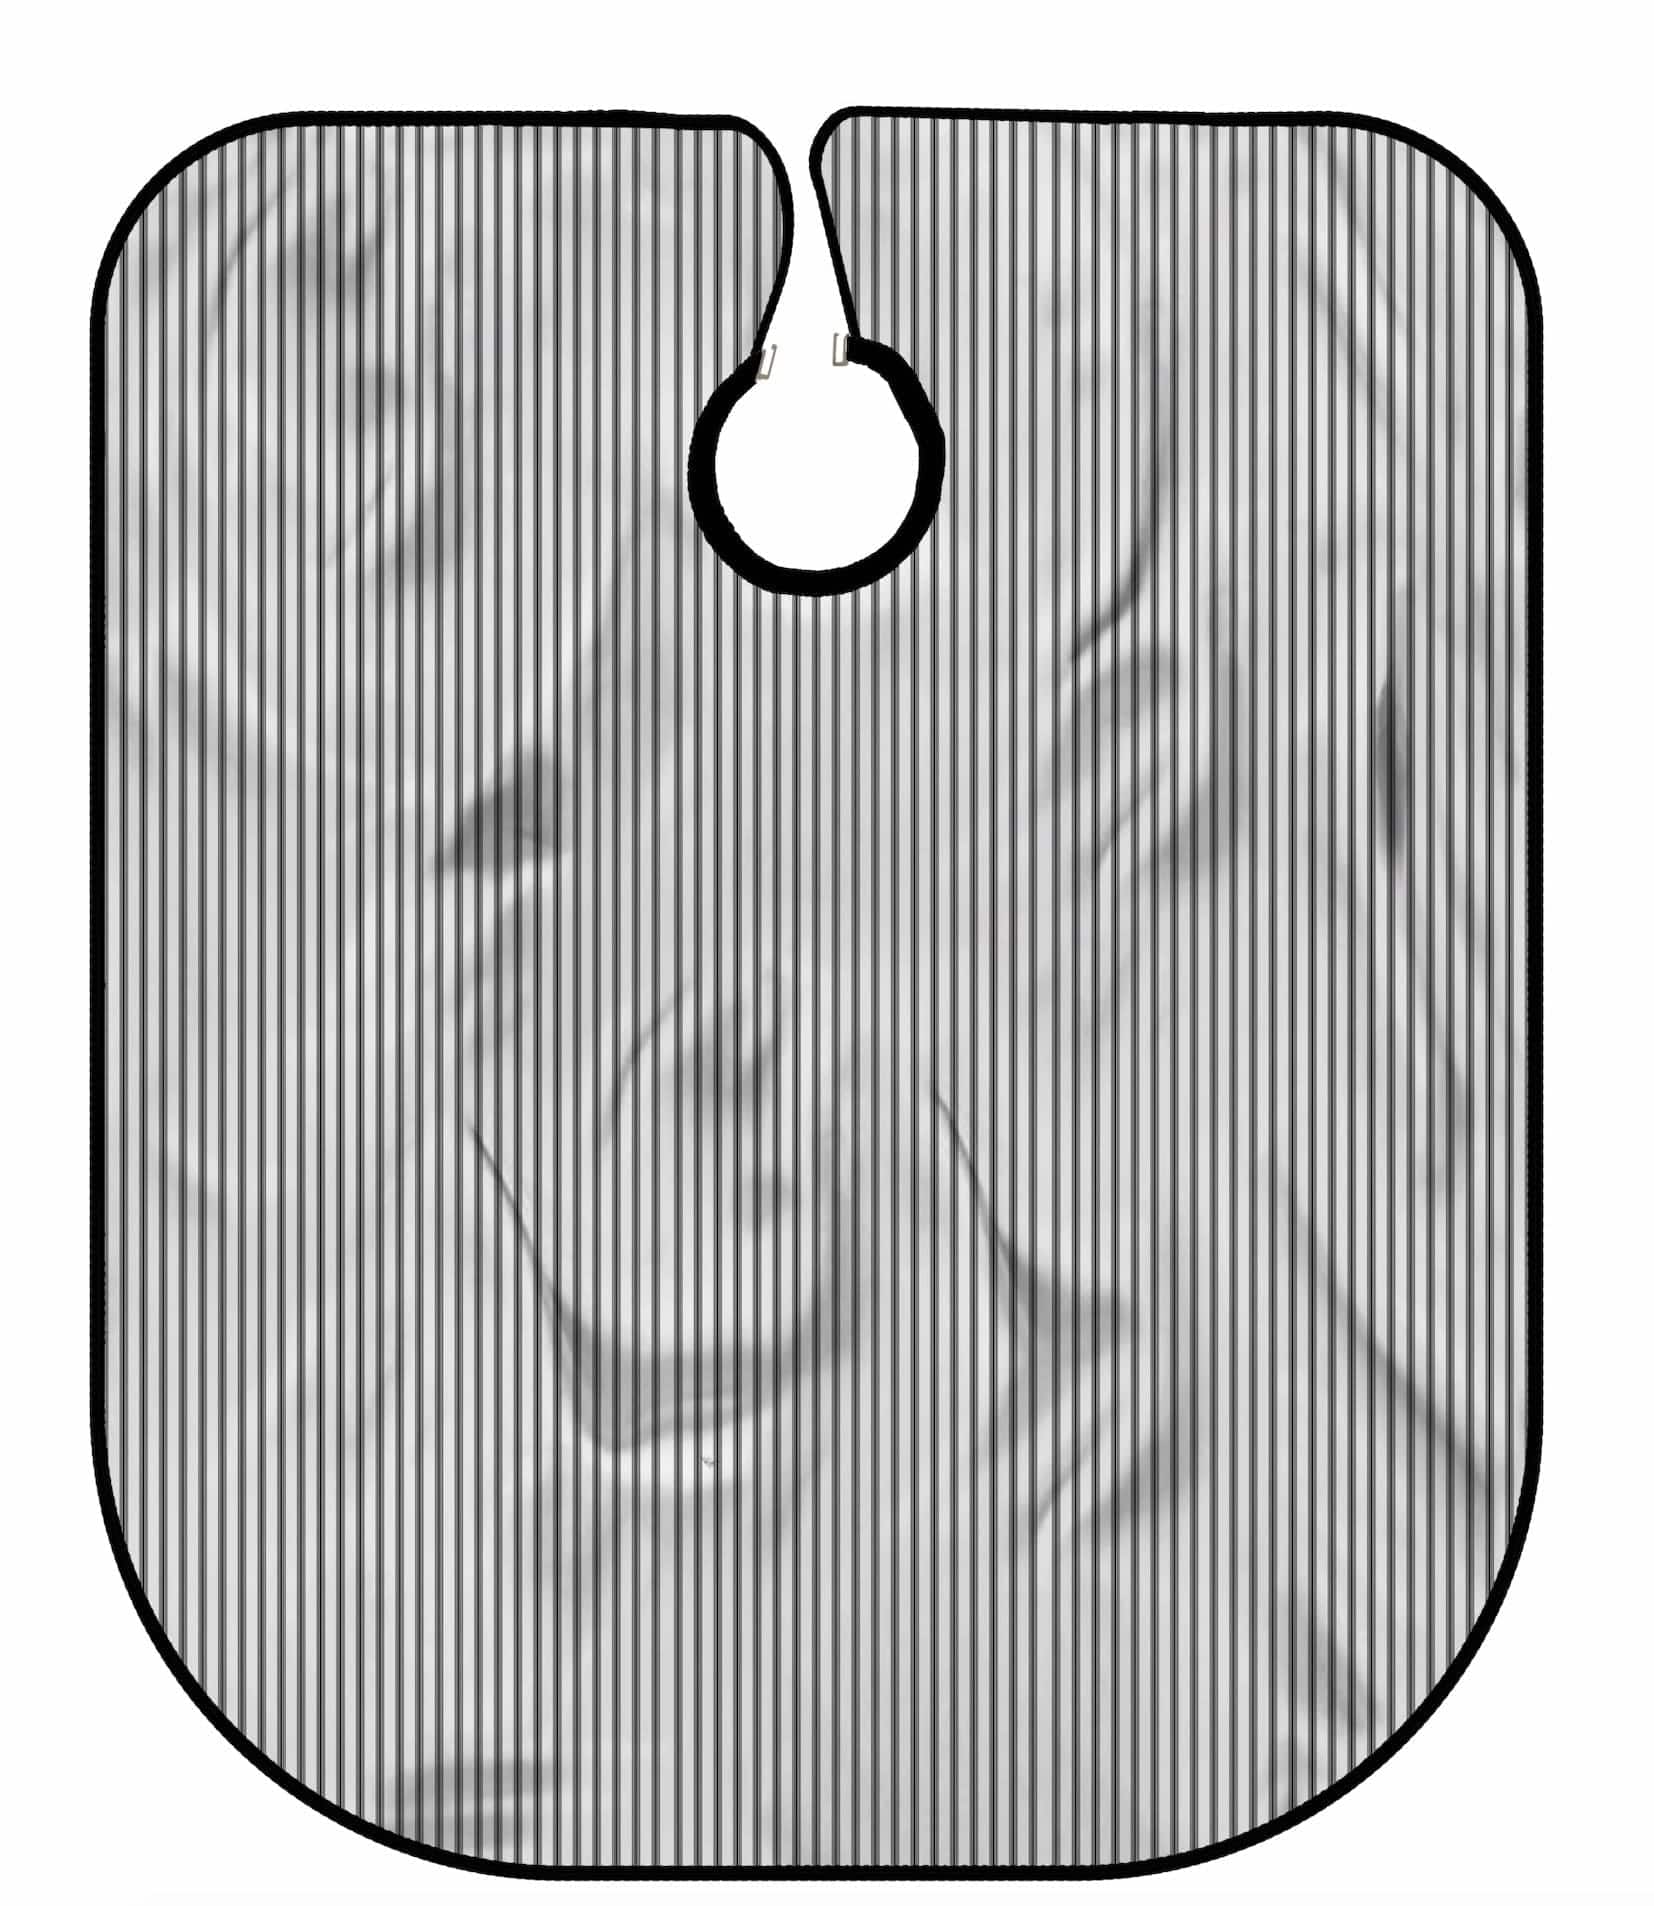 johnbarbersons 1 / Schwarz / Weiß gestreift / Silikonkragen mit Knöpfen Umhang  ohne Logo